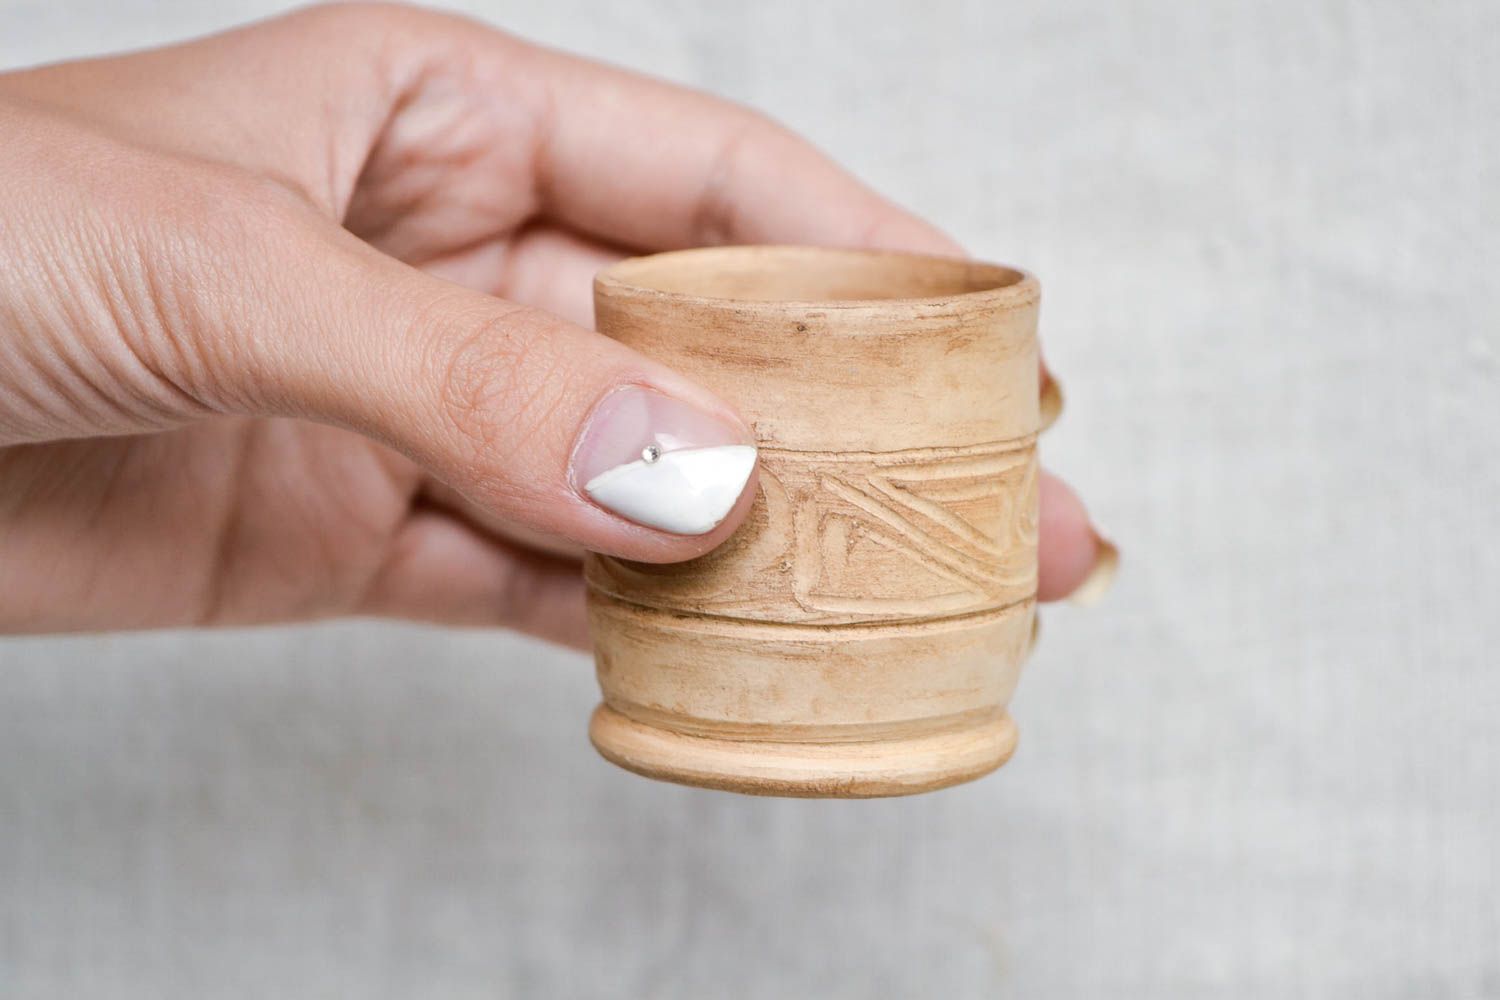 Vaso de chupito hecho a mano regalo original vasija de cerámica para tomar vodka foto 2